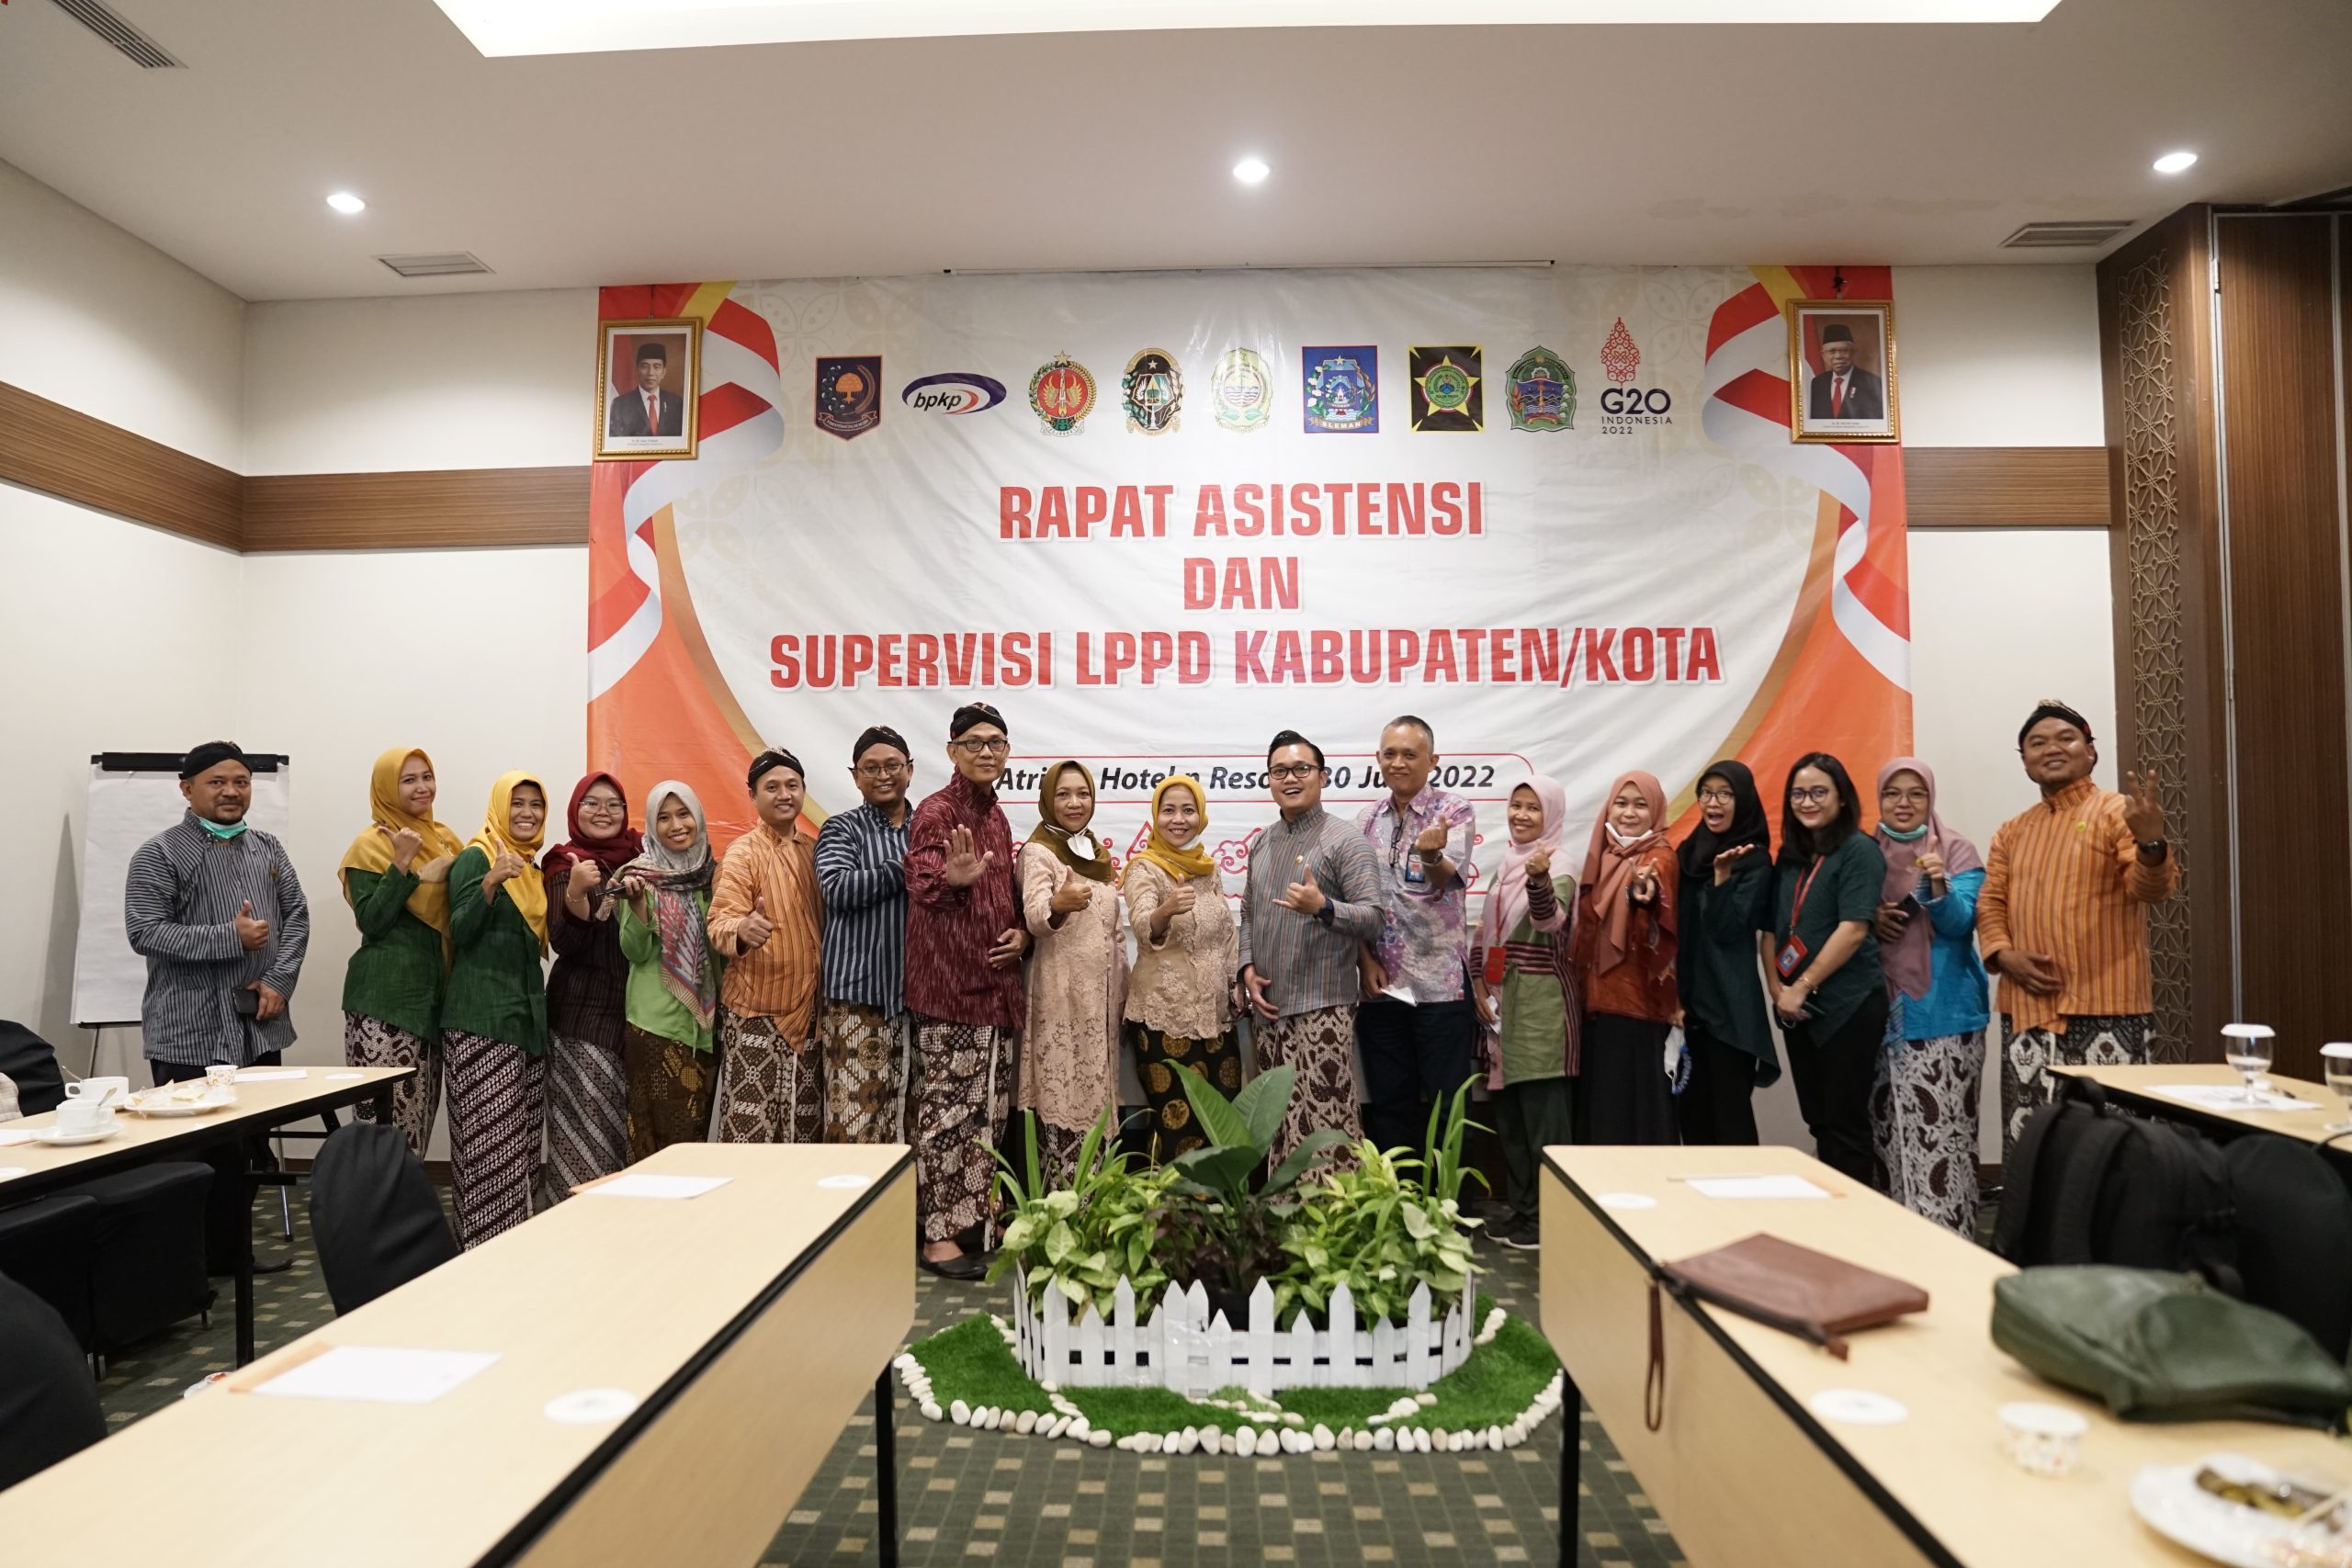 Rapat Asistensi dan Supervisi LPPD Kabupaten/Kota